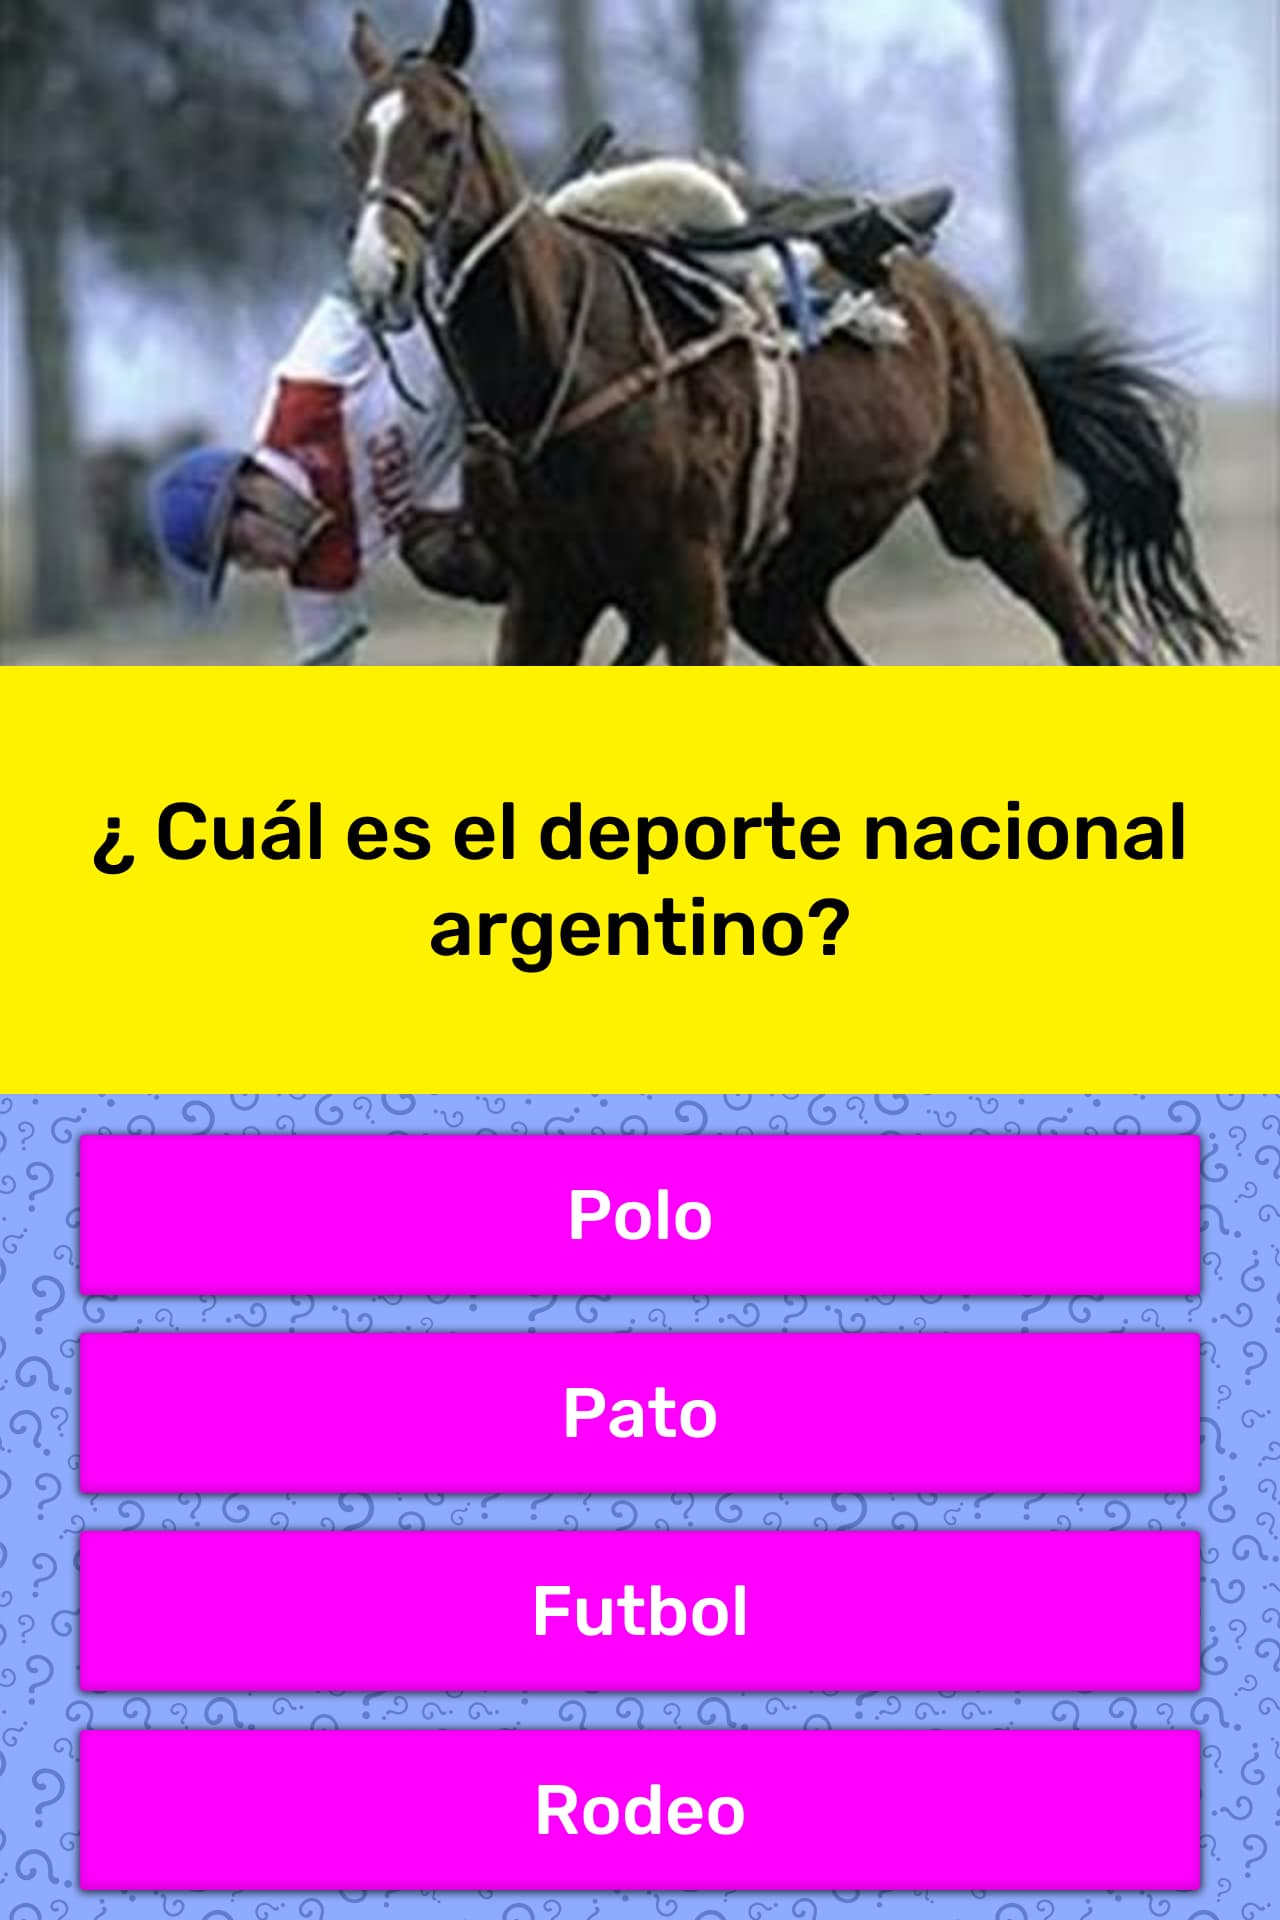 ¿ Cuál es el deporte nacional argentino? | La respuesta de Trivia